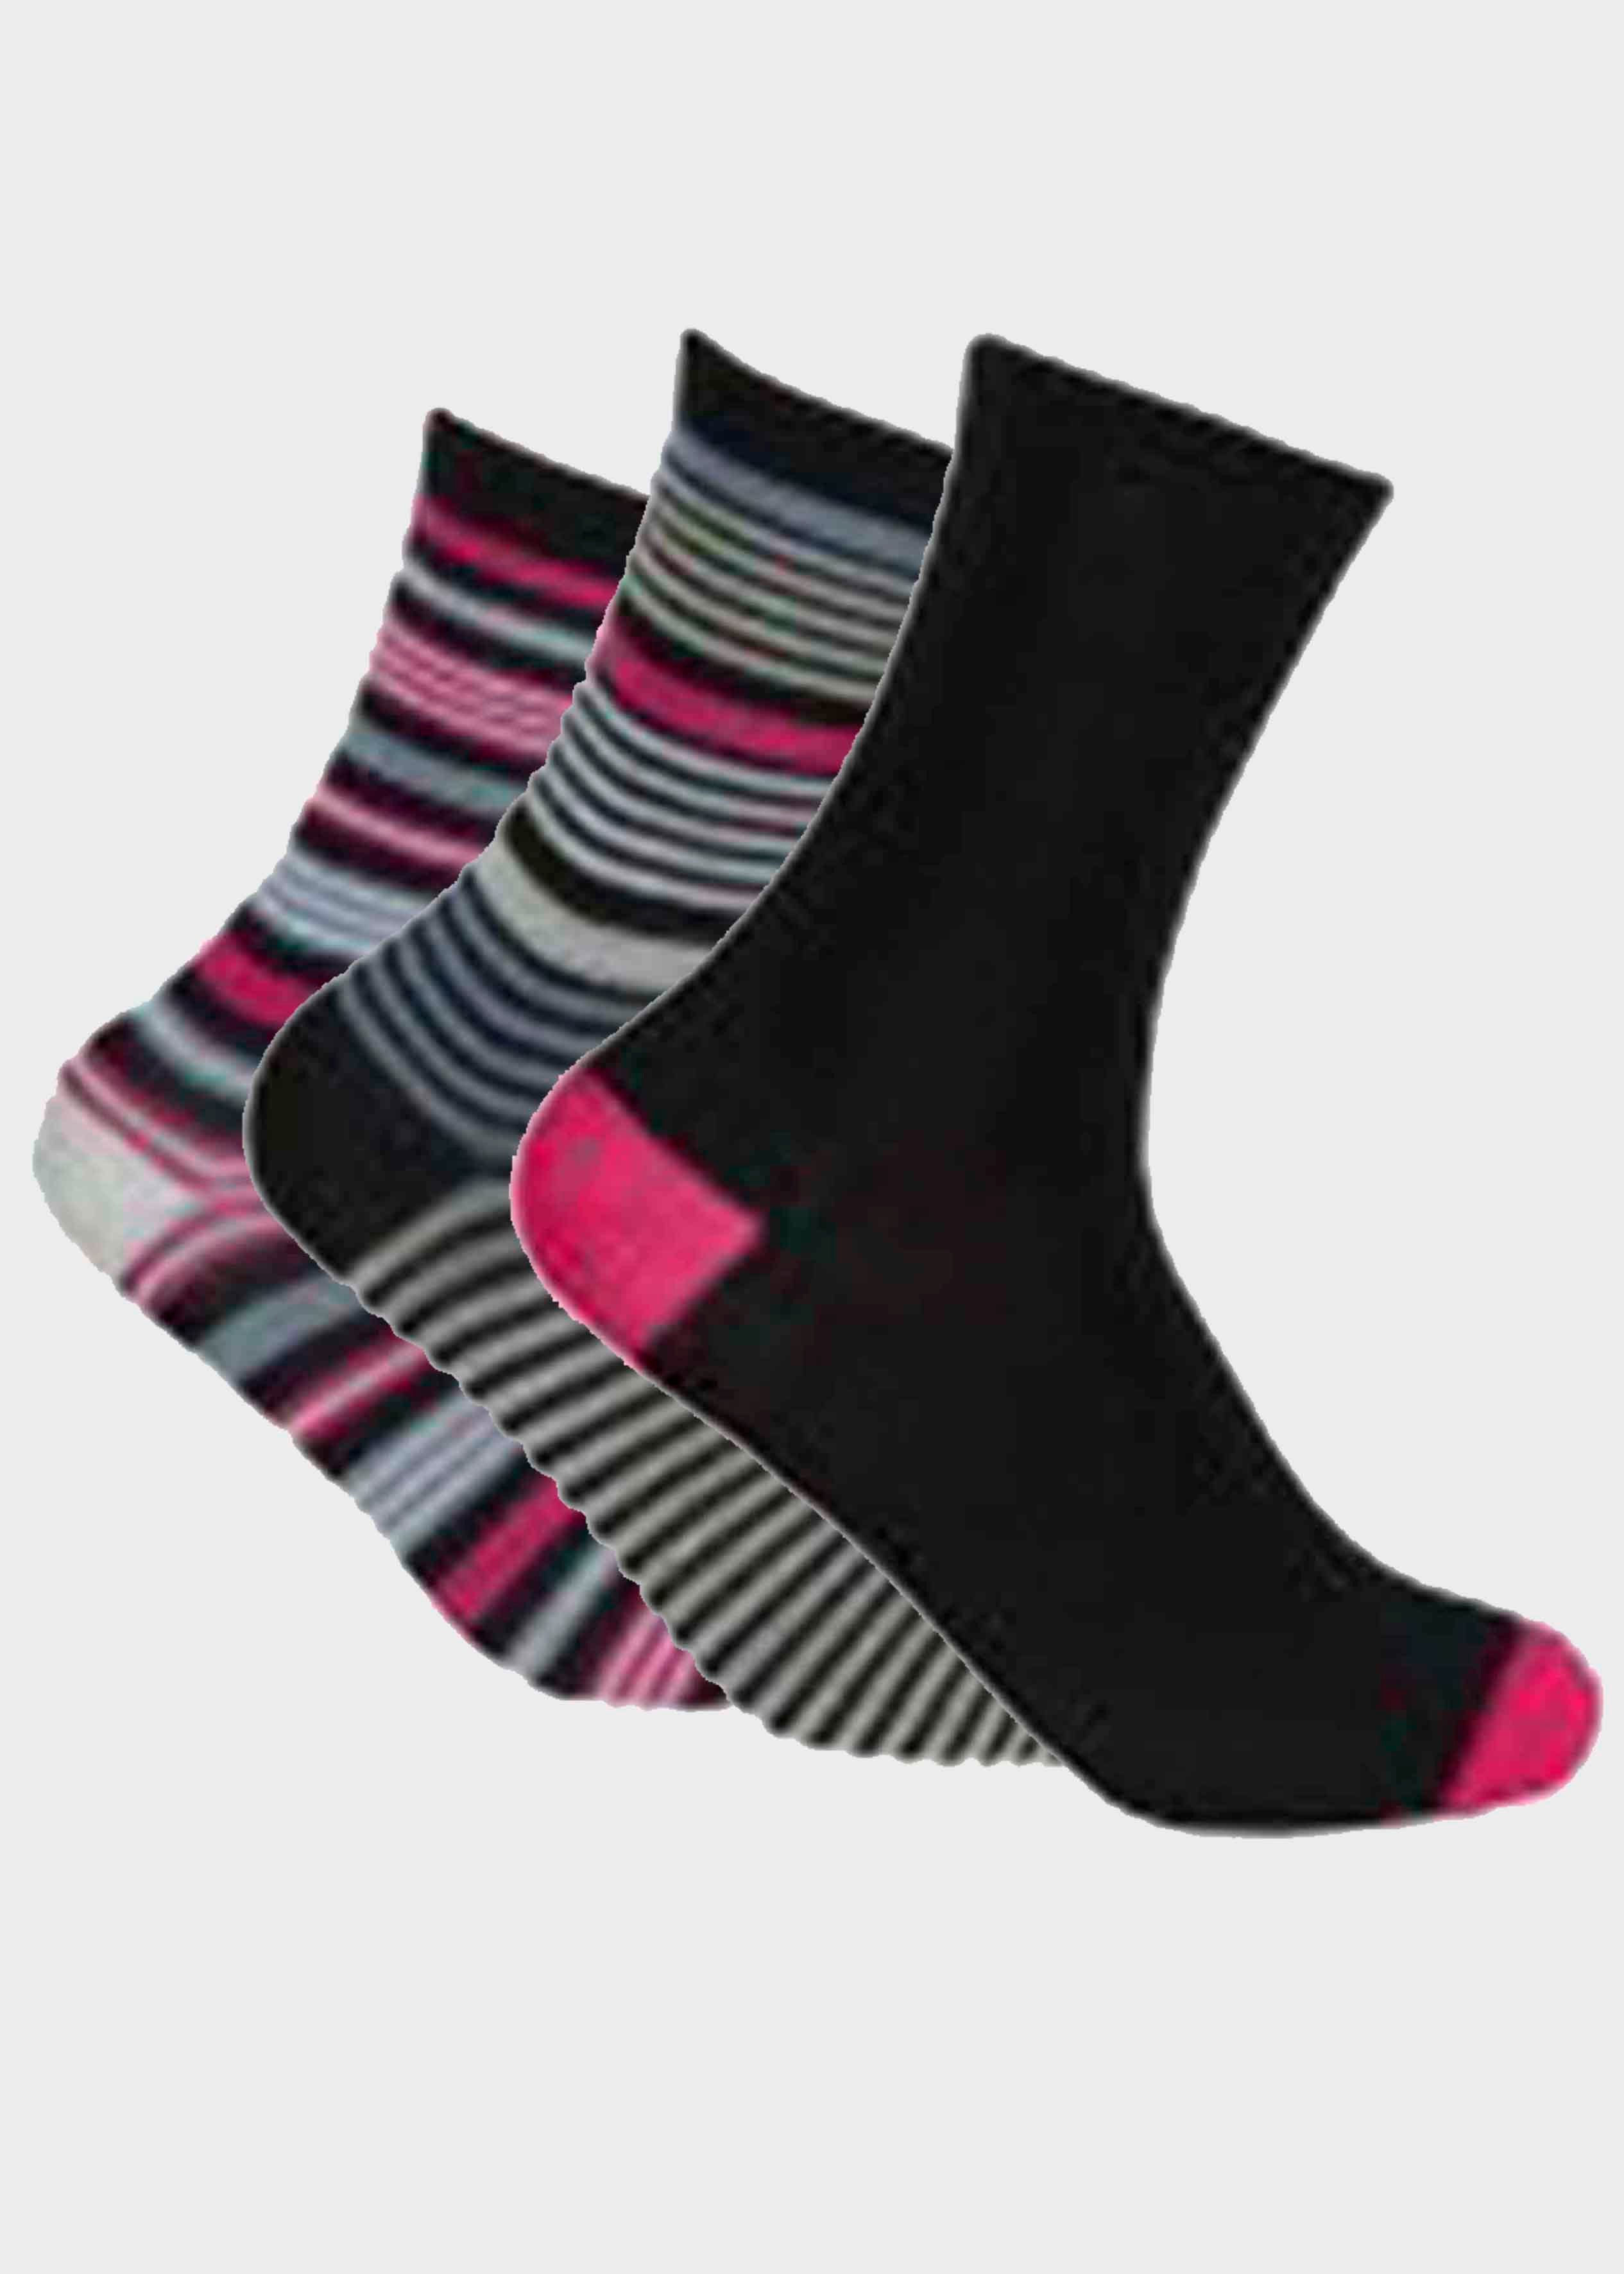 Bamboo Ladies Gentle Grip Socks, 3 Pair Pack, Pattern